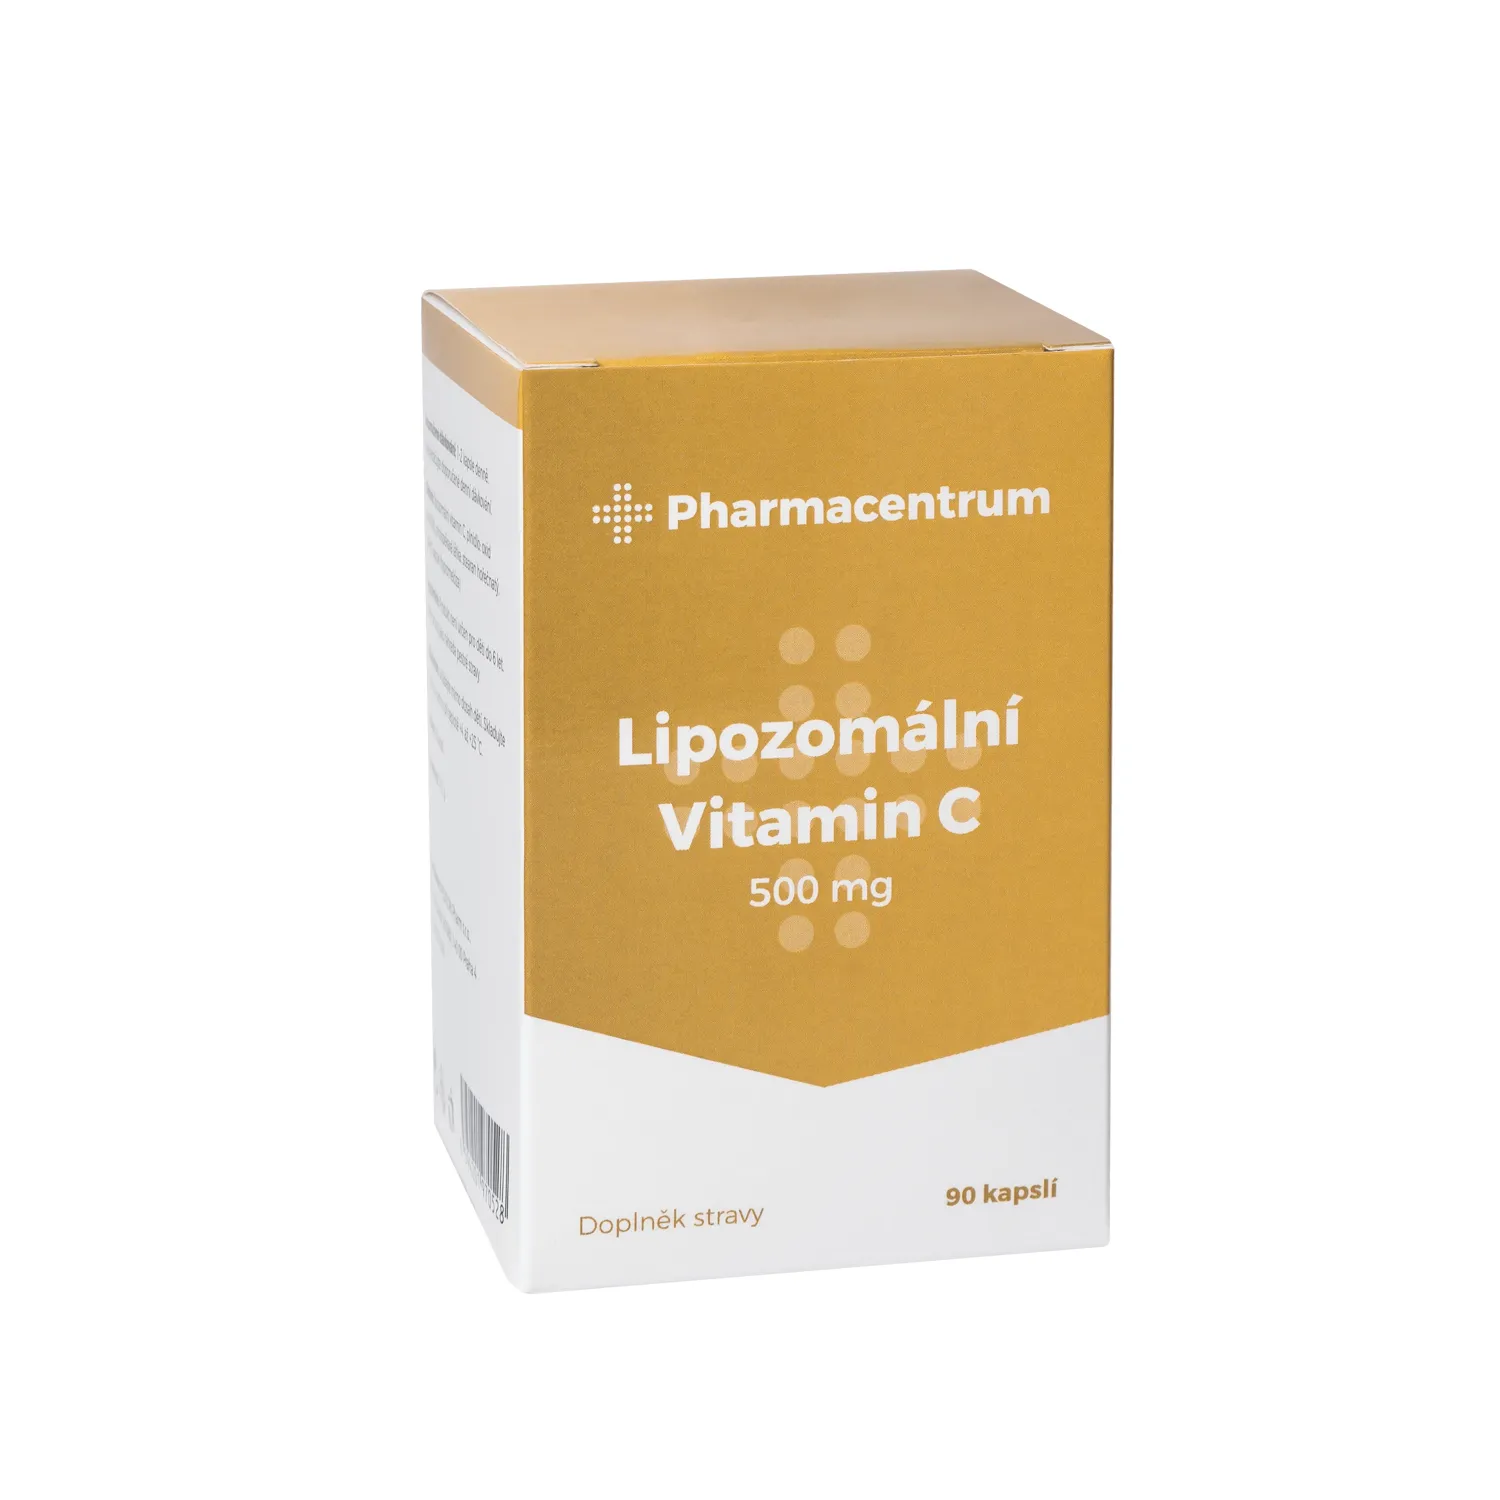 Pharmacentrum Lipozomální Vitamin C 500 mg 90 kapslí